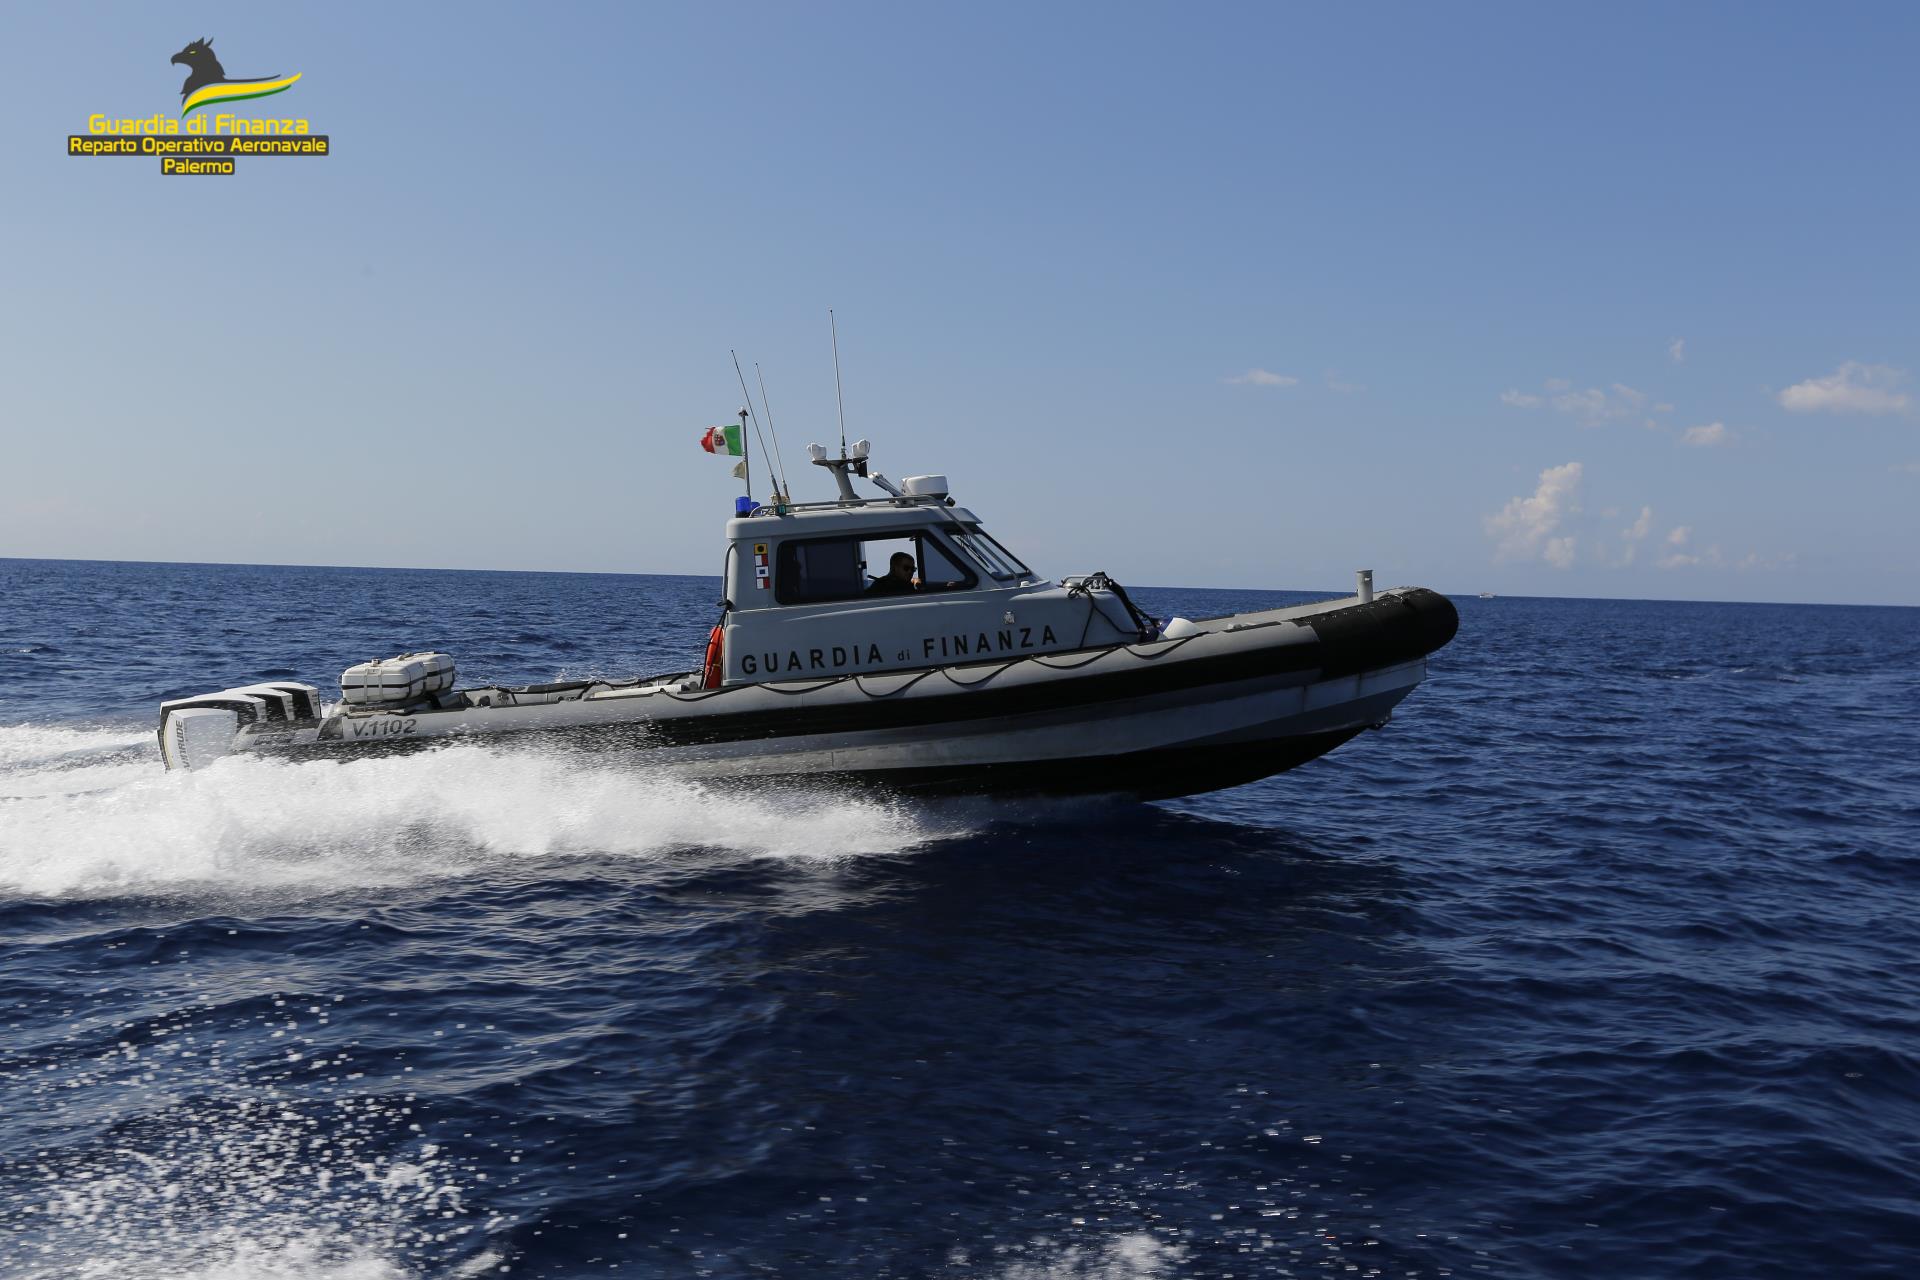 Bloccata nave “madre” a Pantelleria, arrestati i tre membri dell’equipaggio